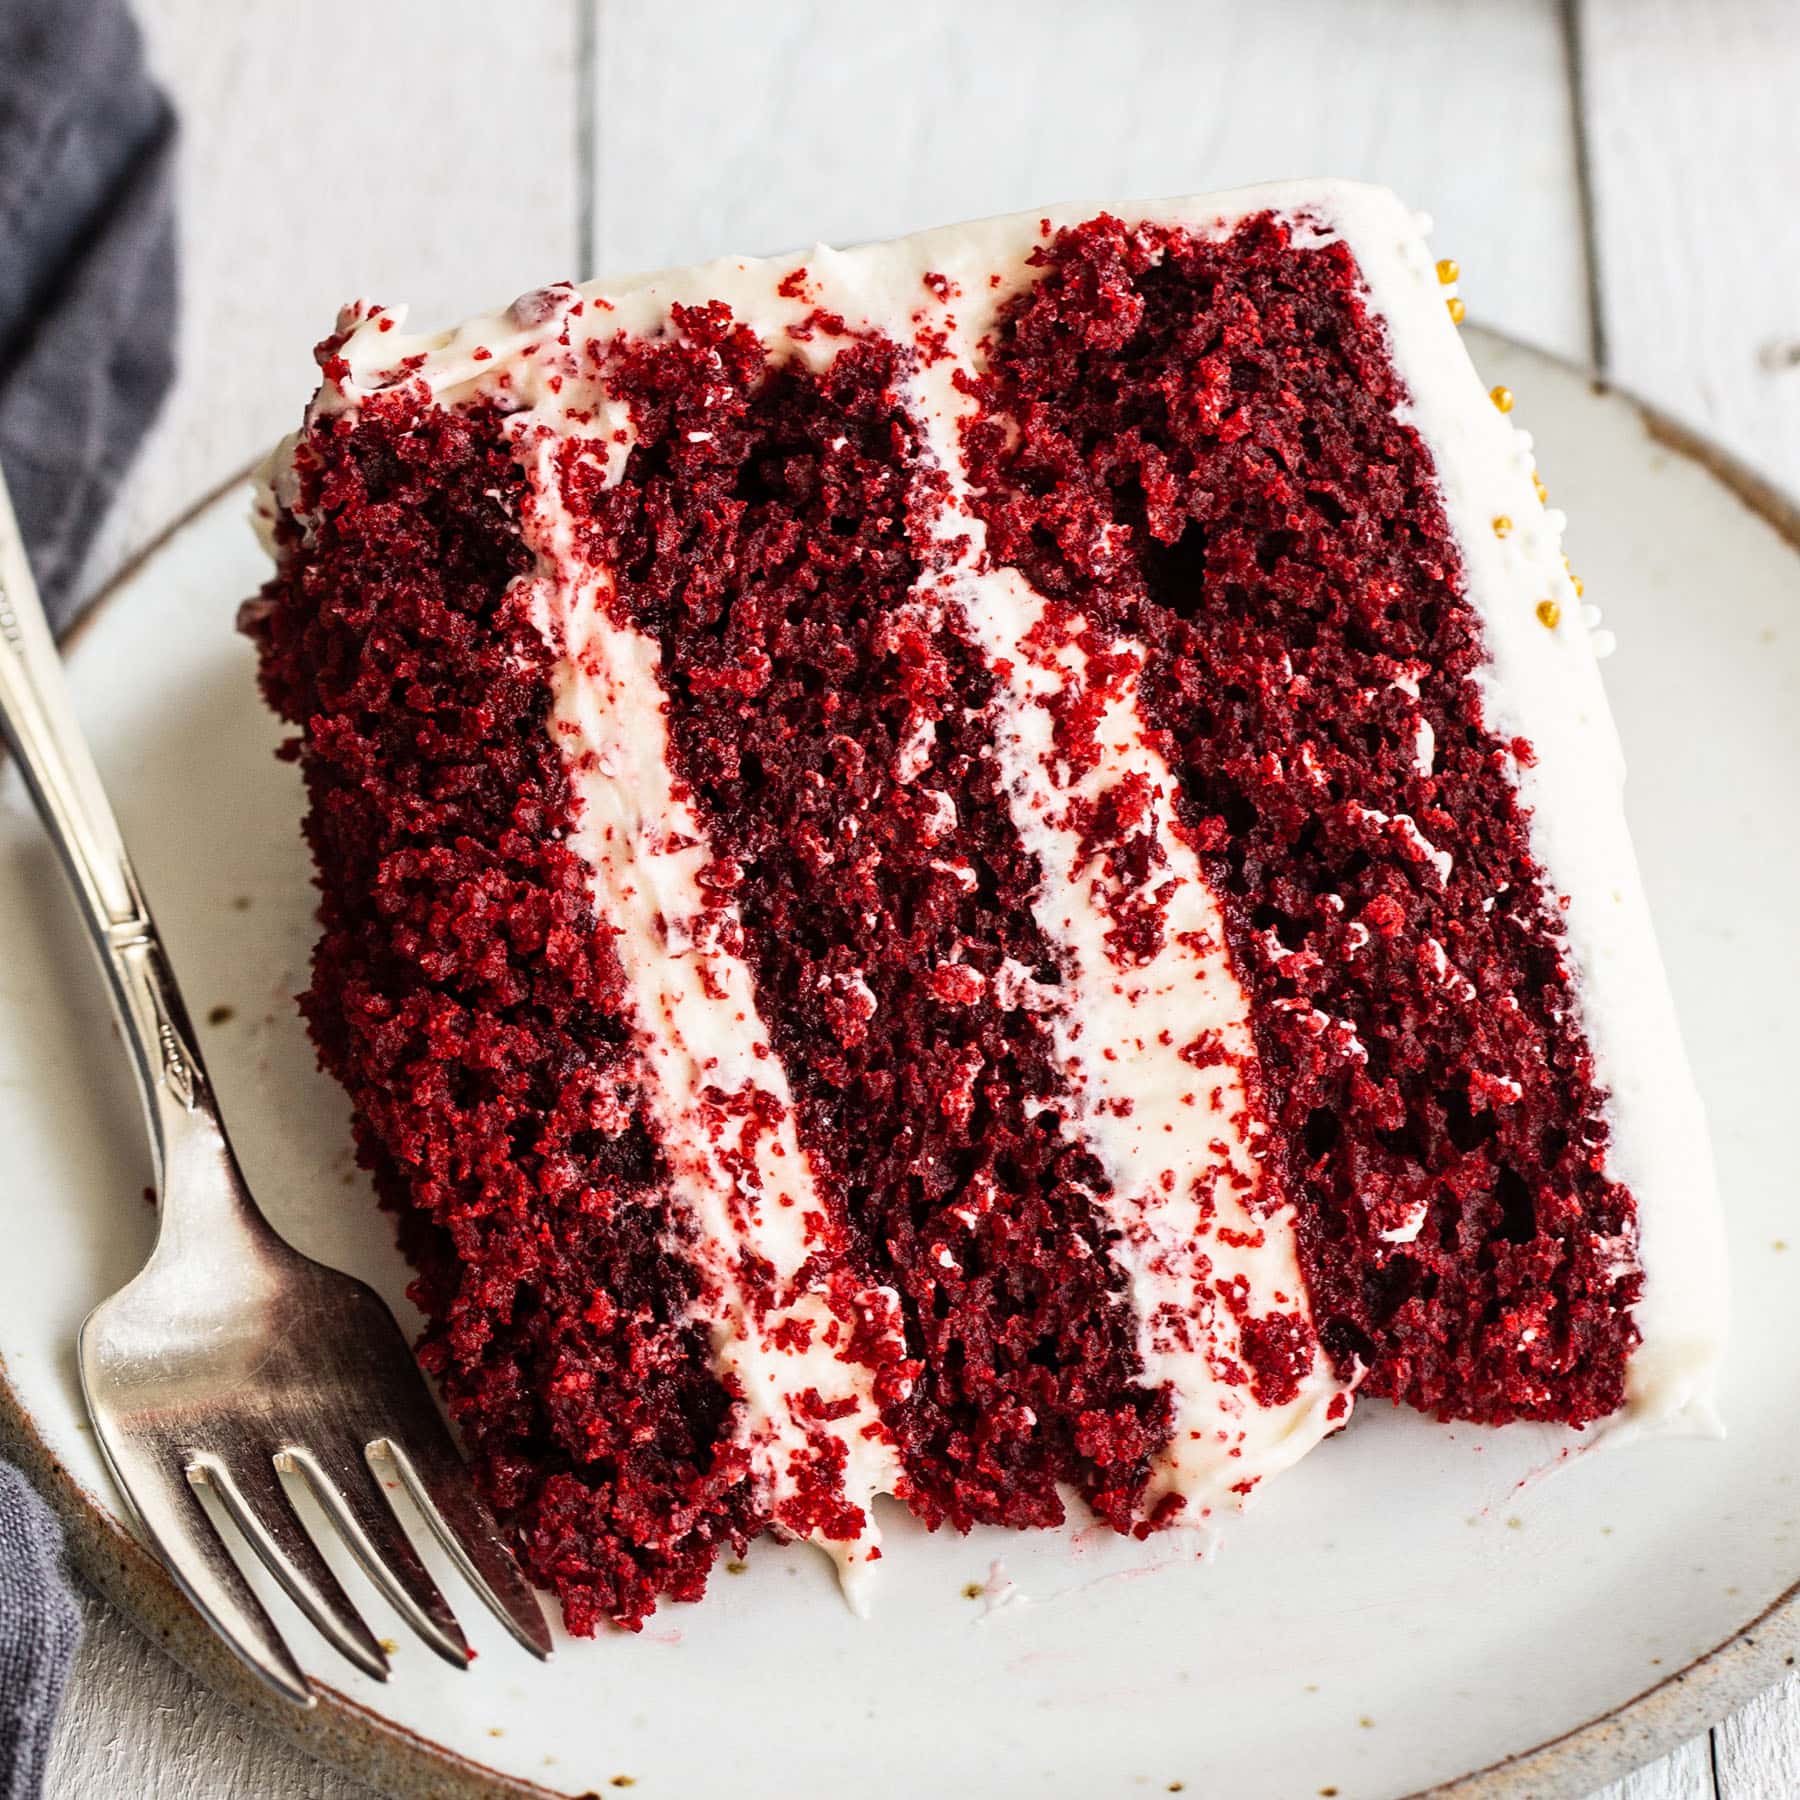 Aggregate more than 193 red velvet cake